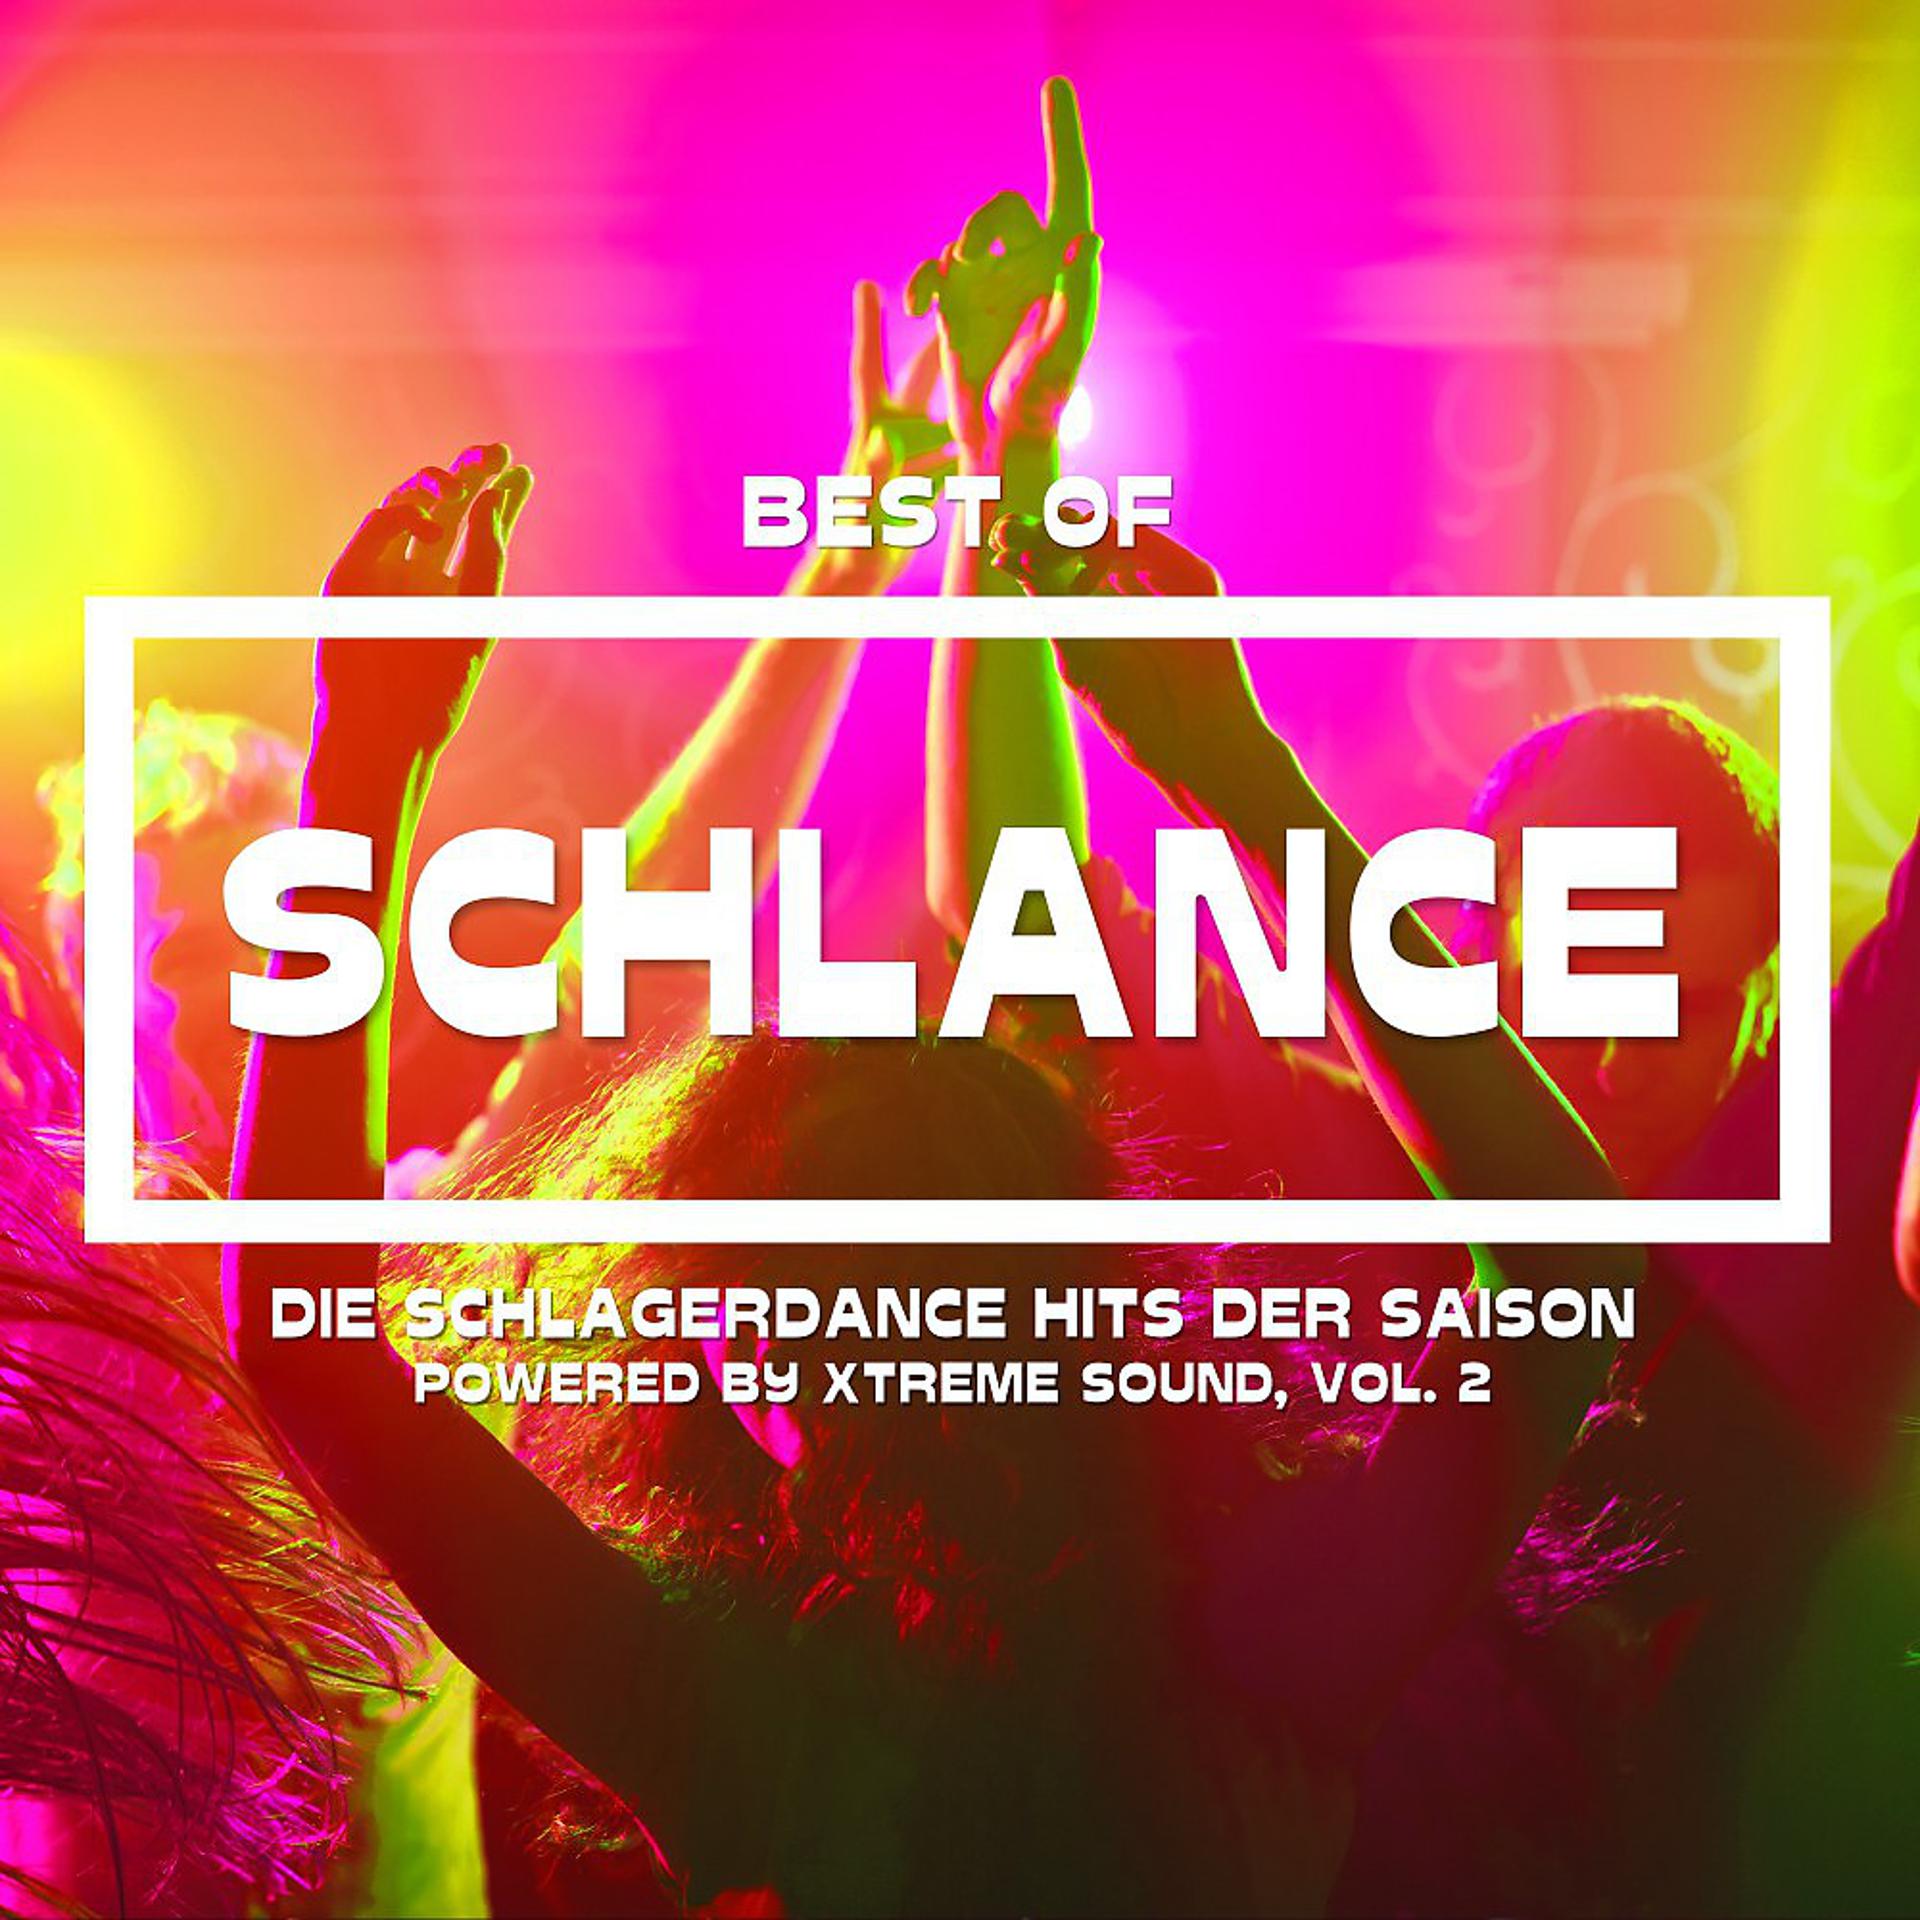 Постер альбома Best of Schlance Die Schlagerdance Hits der Saison powered by Xtreme Sound, Vol. 2